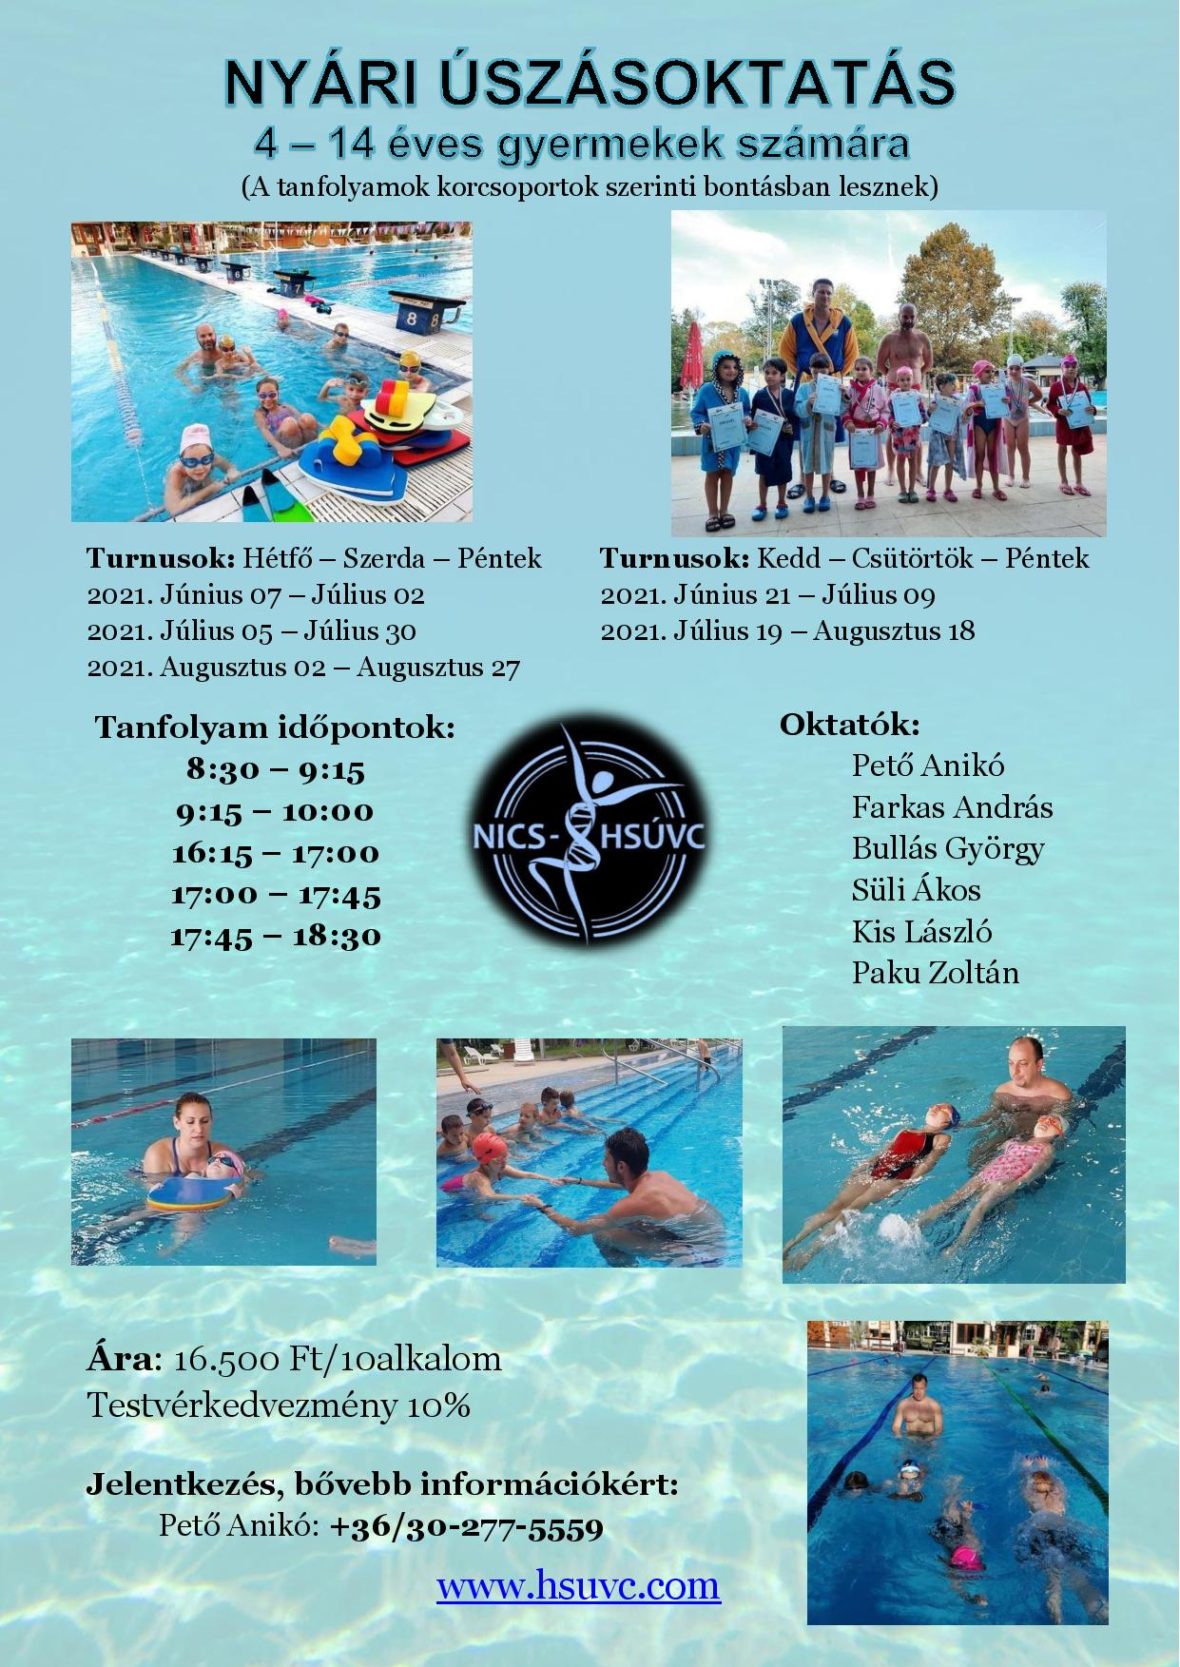 Nyári úszásoktatás – információk